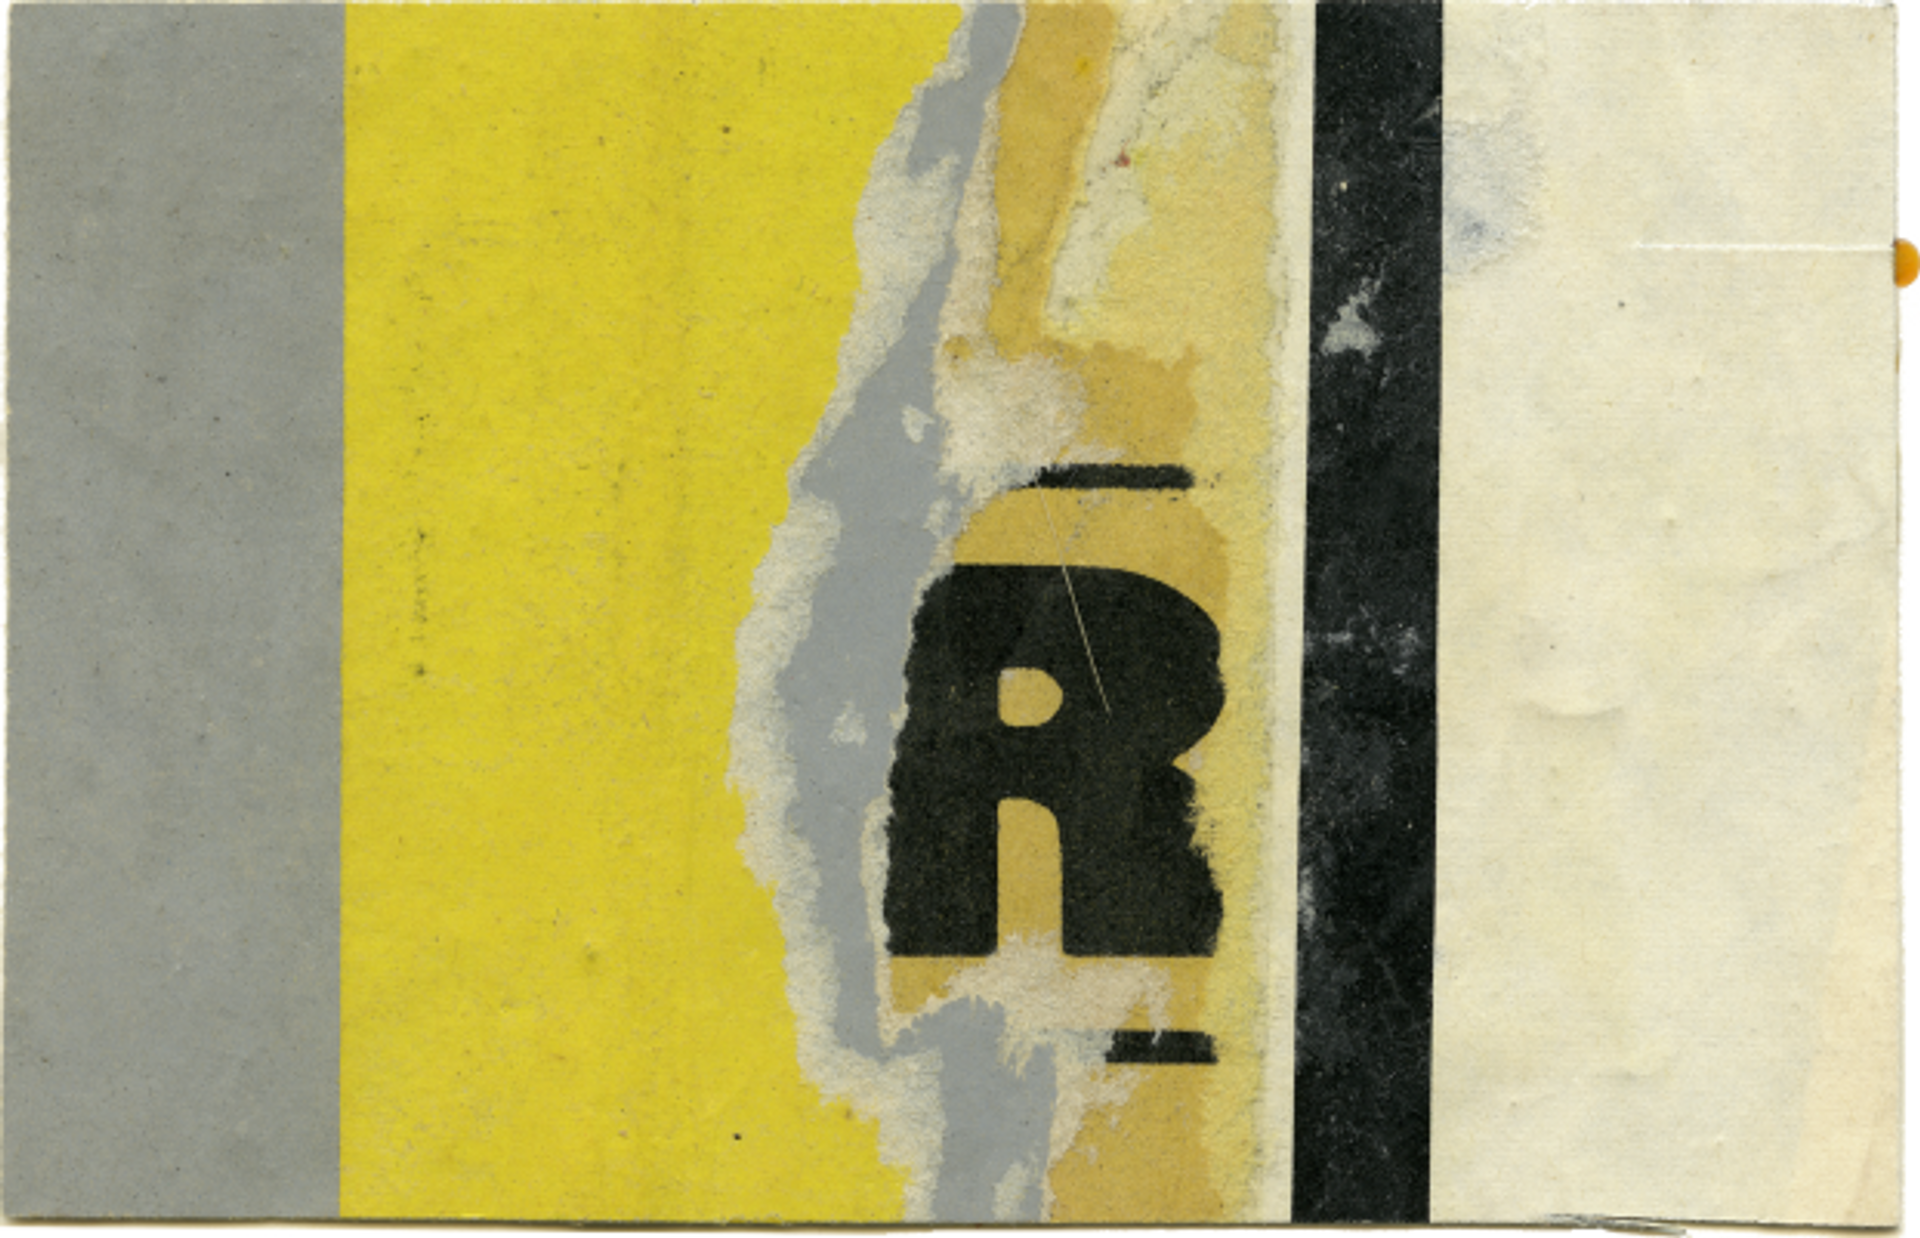 Jacques Villeglé, R, 1966, affiches lacérées contrecollées sur carton Bristol. Prix : 3500 euros. © Jacques Villeglé. Courtesy galerie G.-P. & N. Vallois, Paris